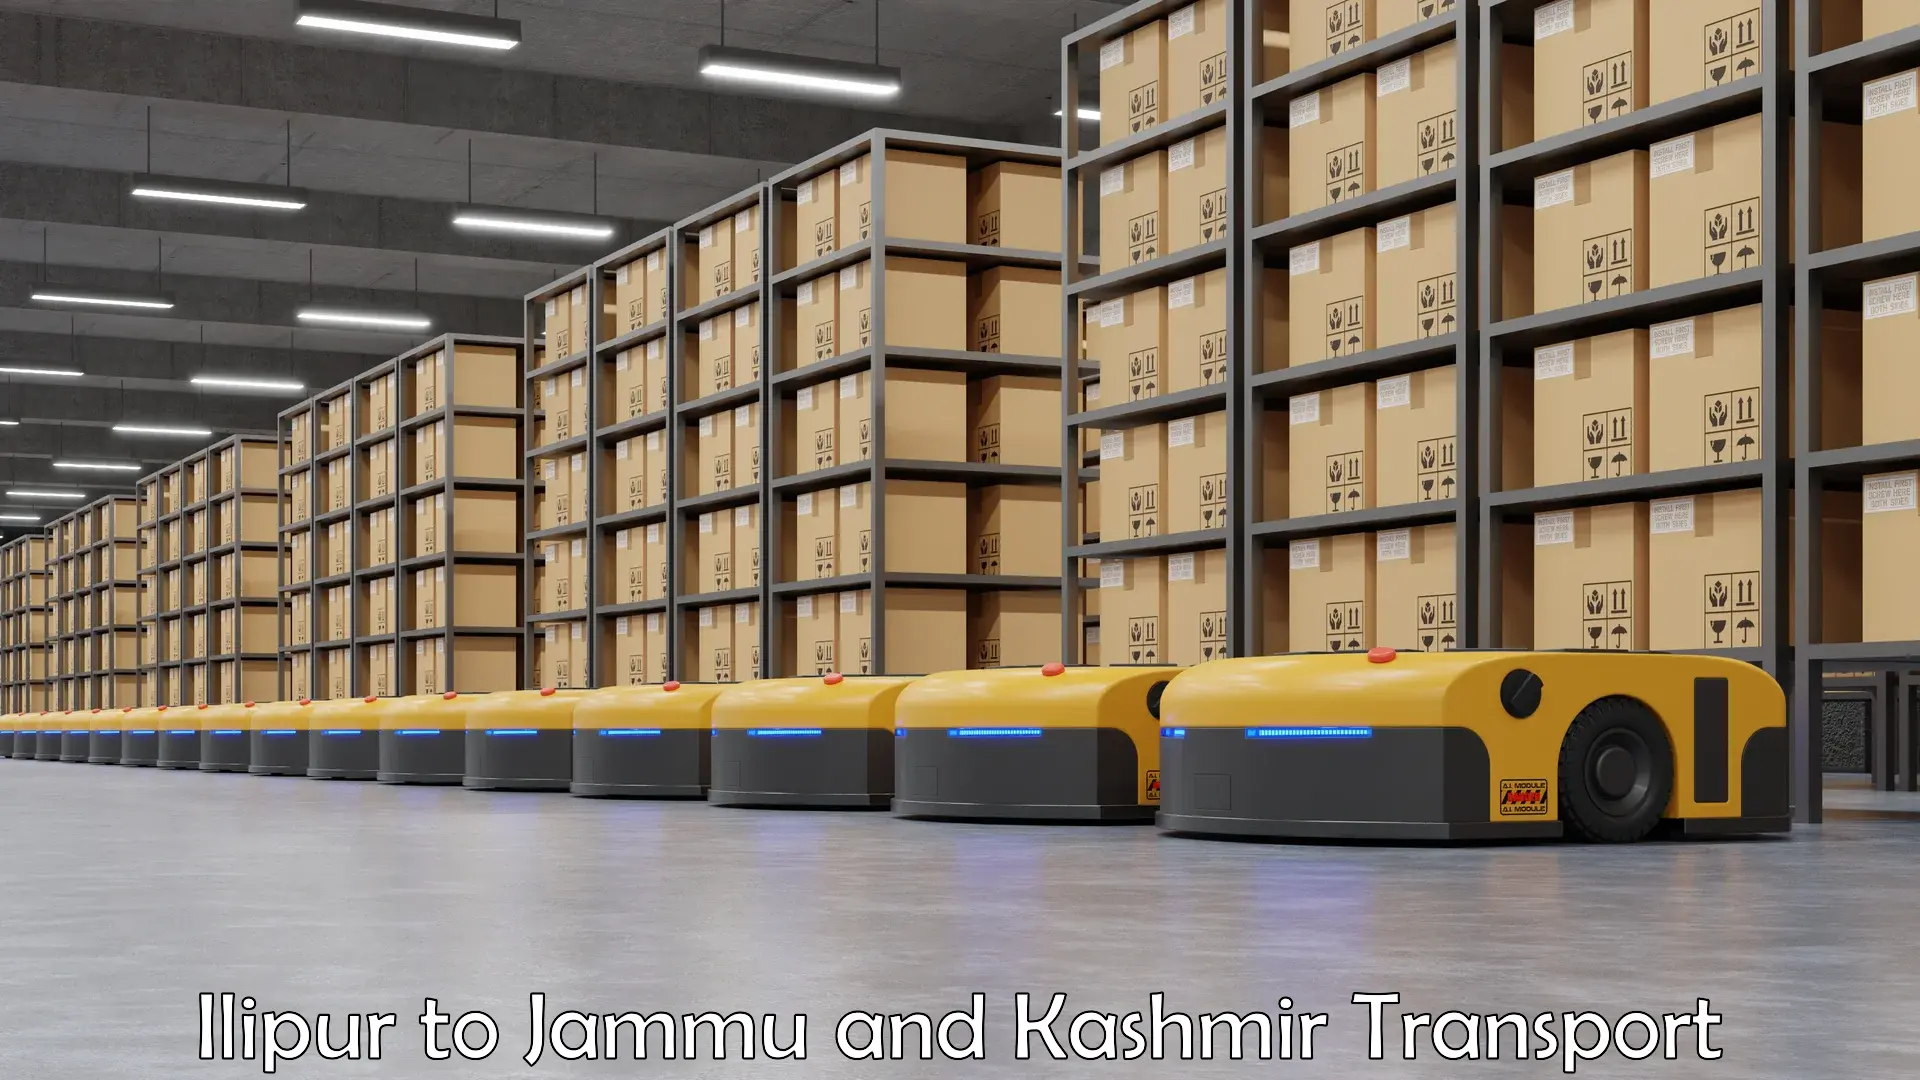 Transportation services Ilipur to IIT Jammu